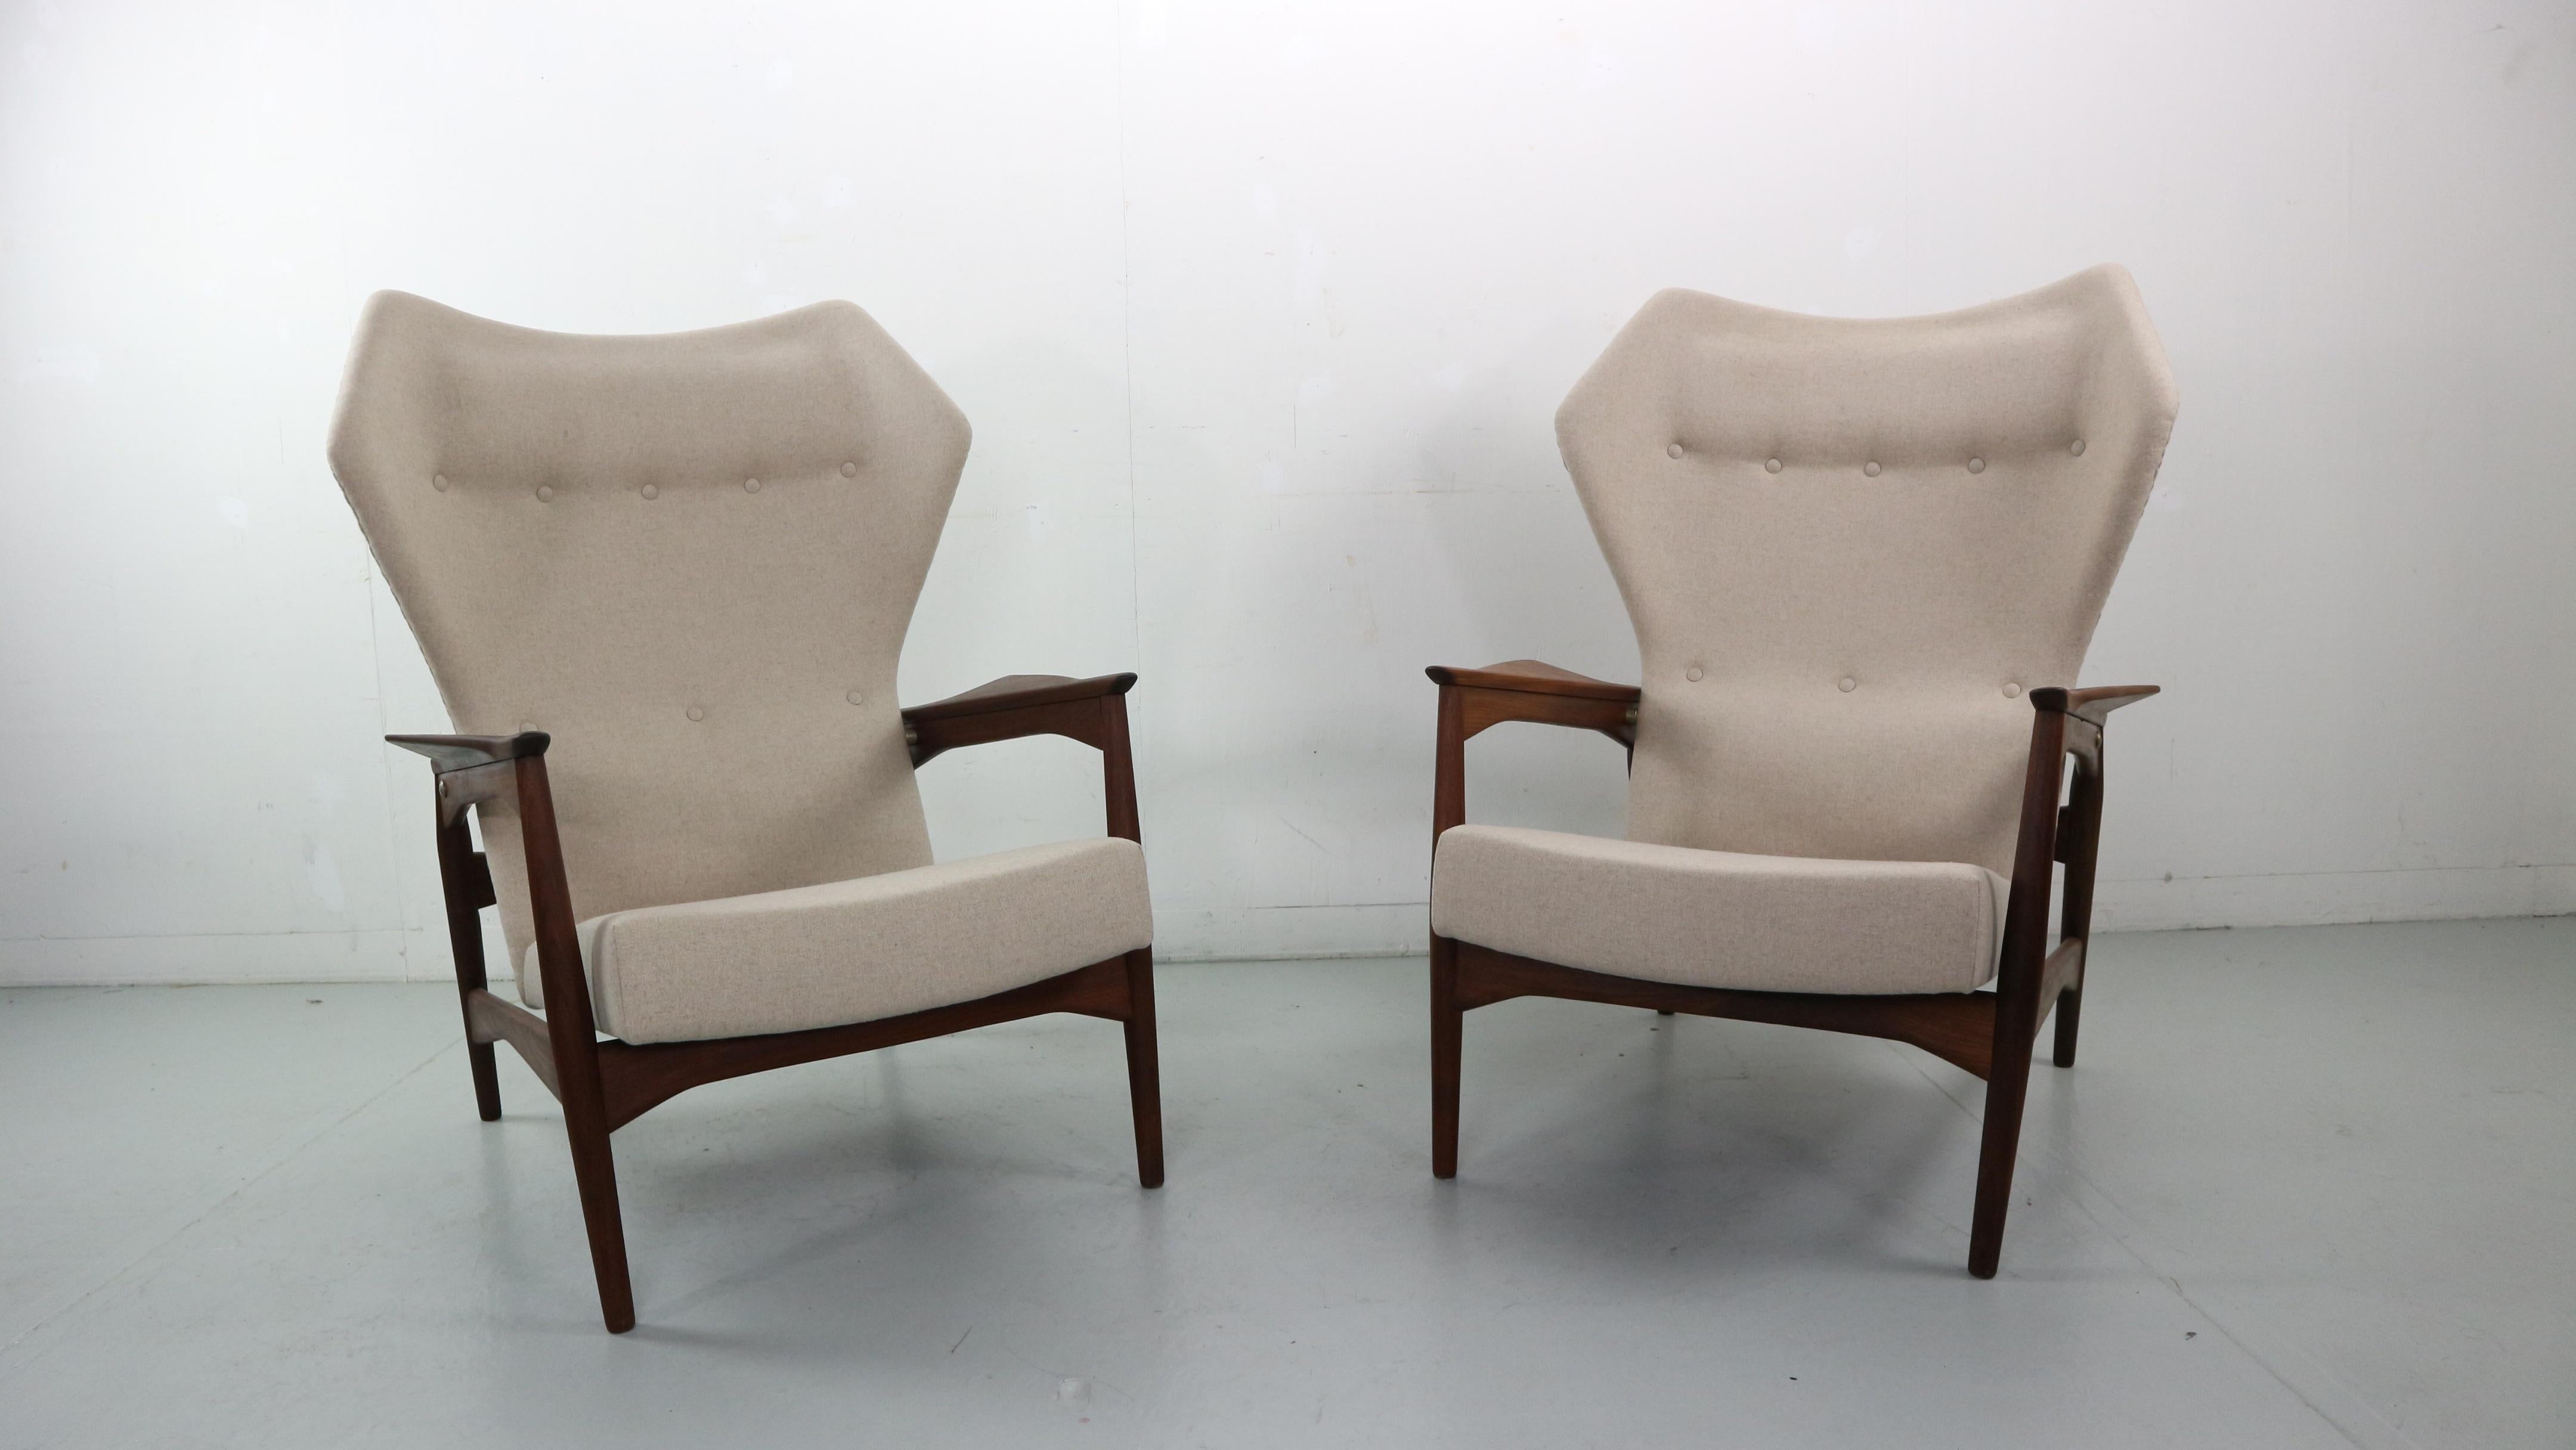 Ein Satz von zwei Ohrensesseln, entworfen von Ib Kofod-Larsen im Jahr 1954. Die Stühle sind neigbar und können in drei Positionen eingestellt werden, wie auf den Bildern zu sehen. Die Stühle wurden in einem beigefarbenen Naturwollstoff (Shiitake)